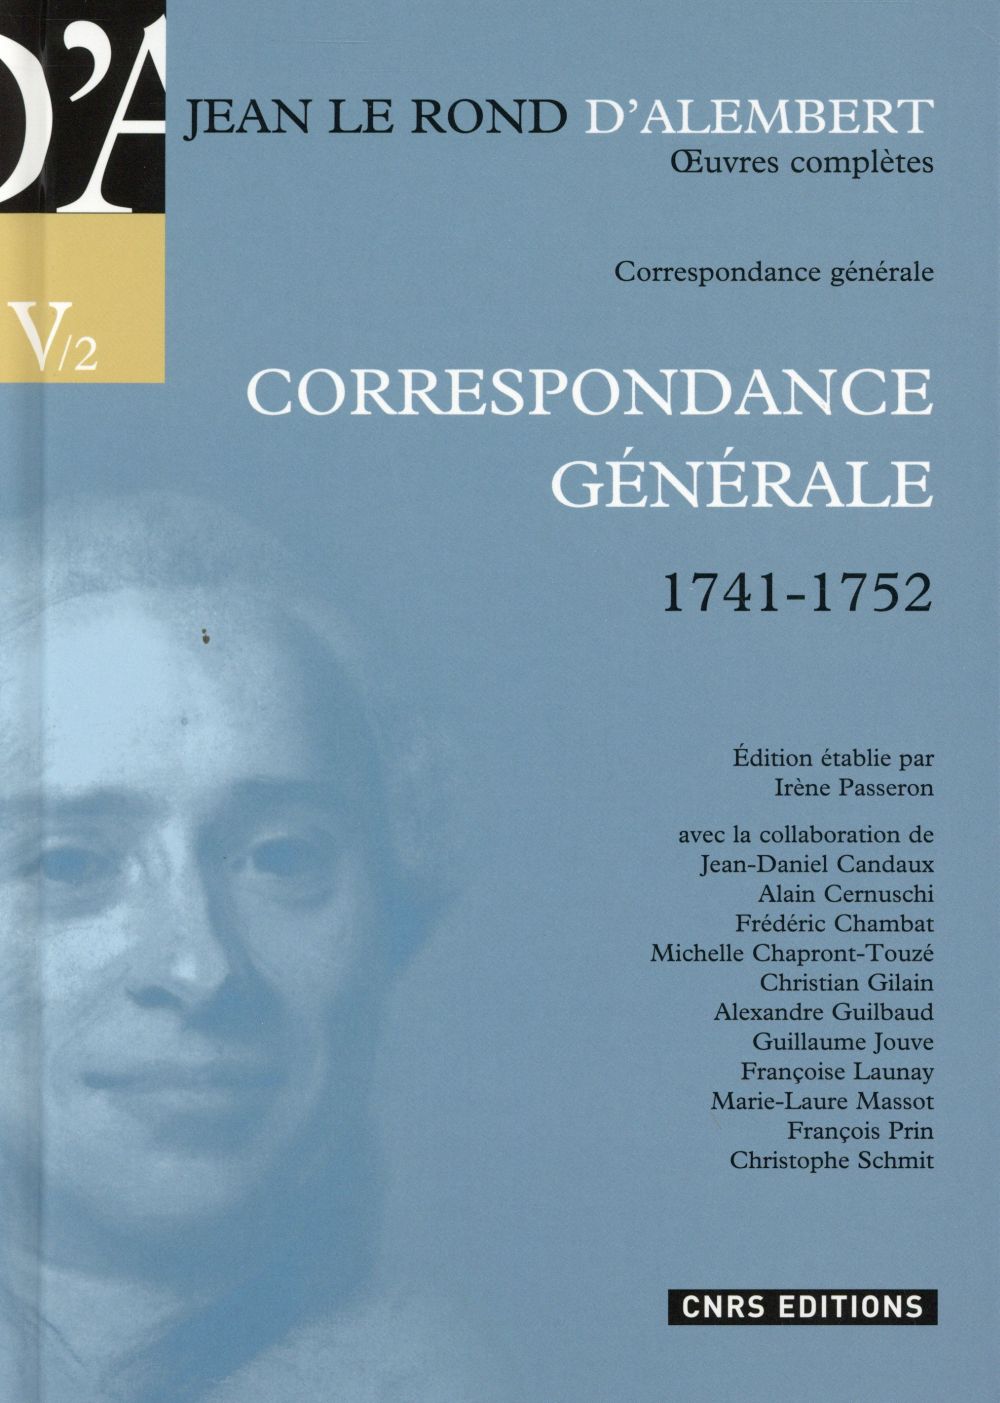 JEAN LE ROND D'ALEMBERT -CORRESPONDANCE GENERALE1741-1752